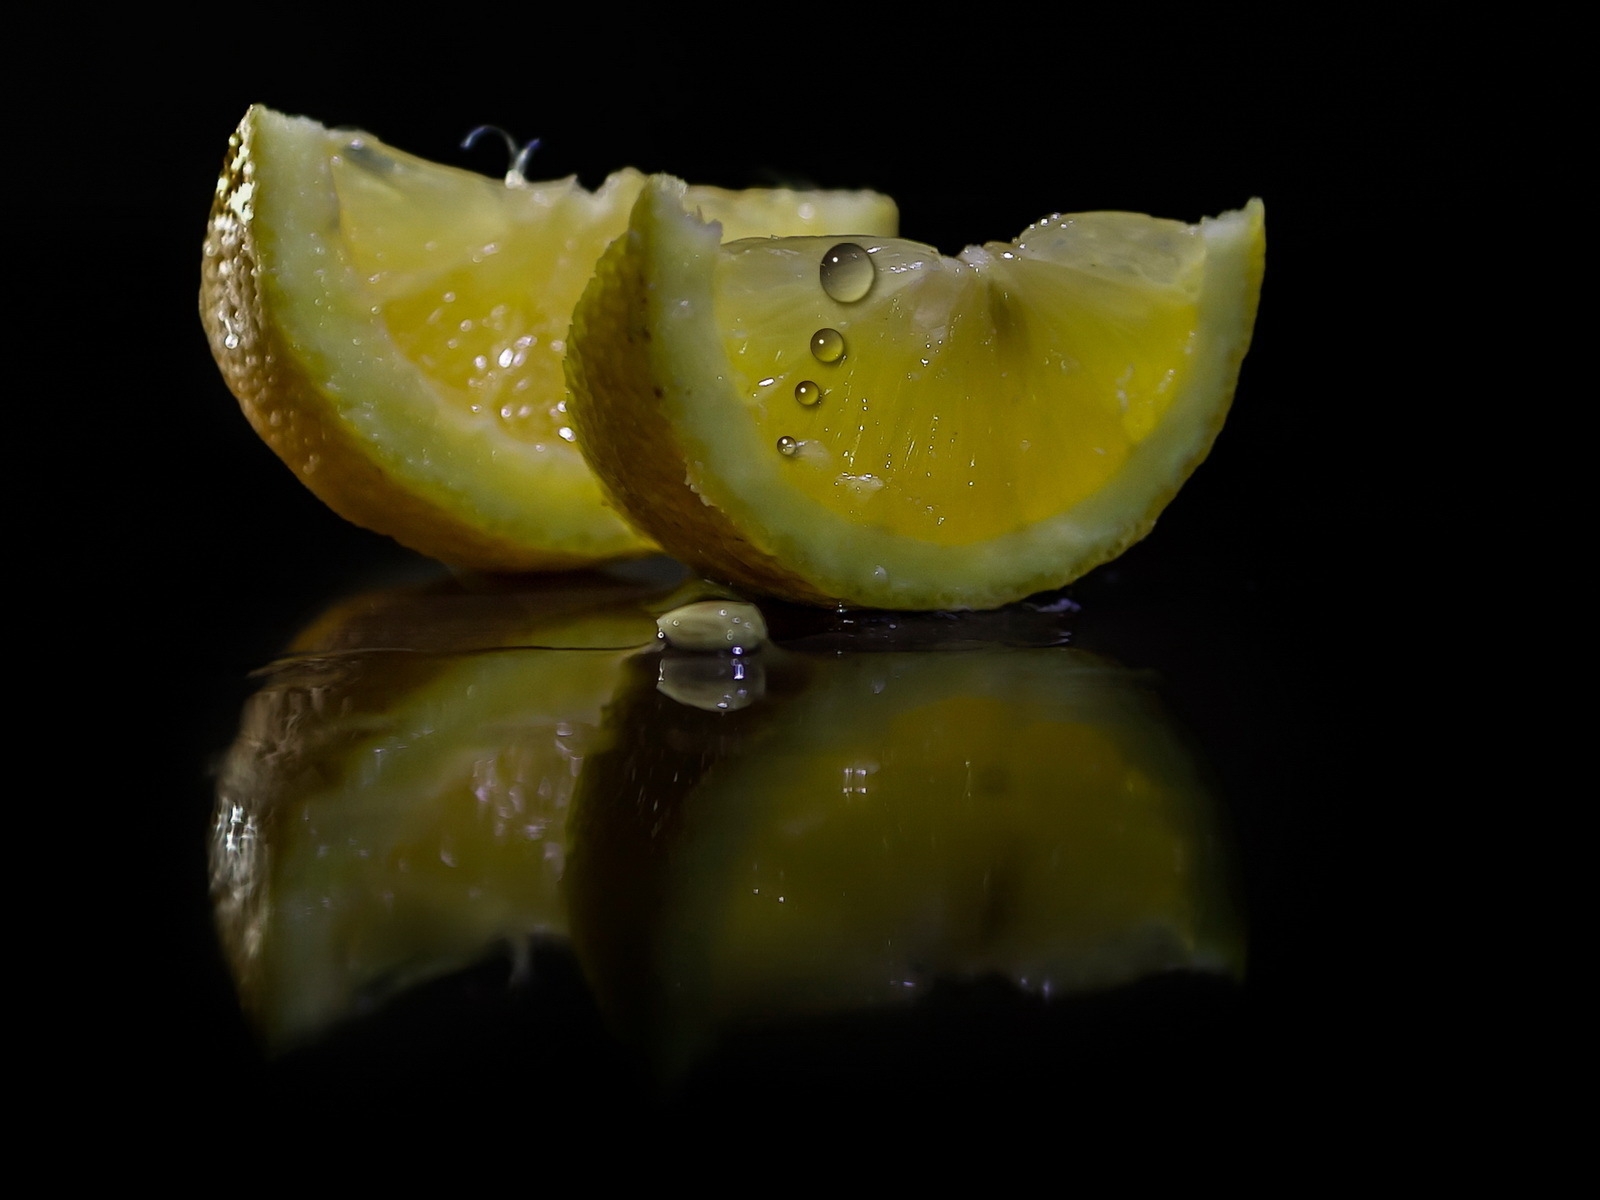 Lemon Slices for 1600 x 1200 resolution